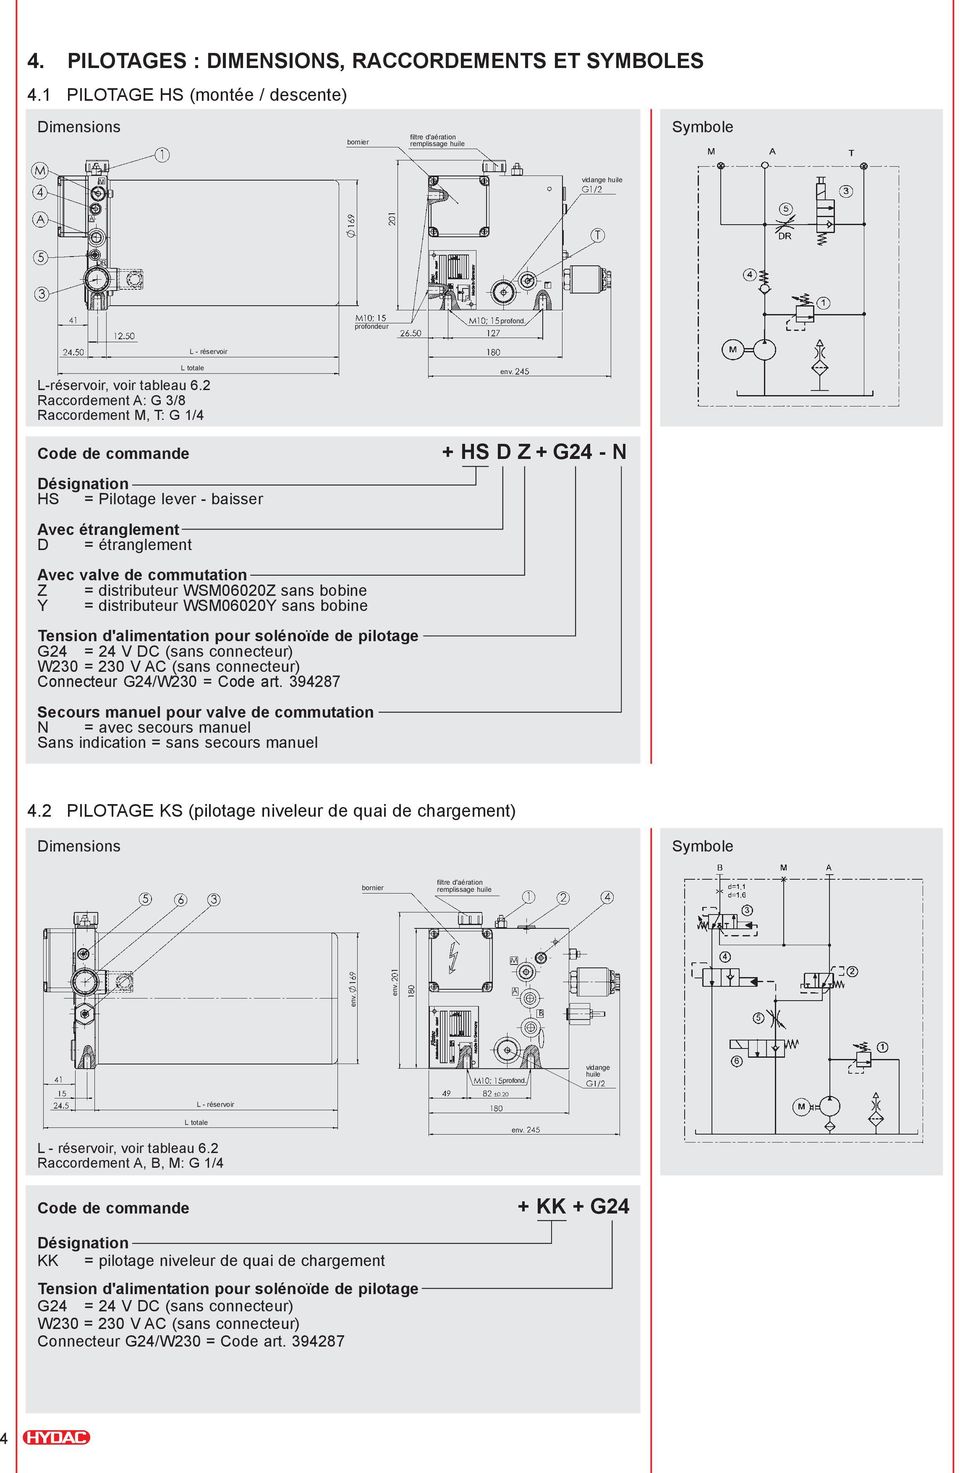 bobine Y = distributeur WSM06020Y sans bobine Secours manuel pour valve de commutation N = avec secours manuel Sans indication = sans secours manuel + HS D Z + G24 - N 4.